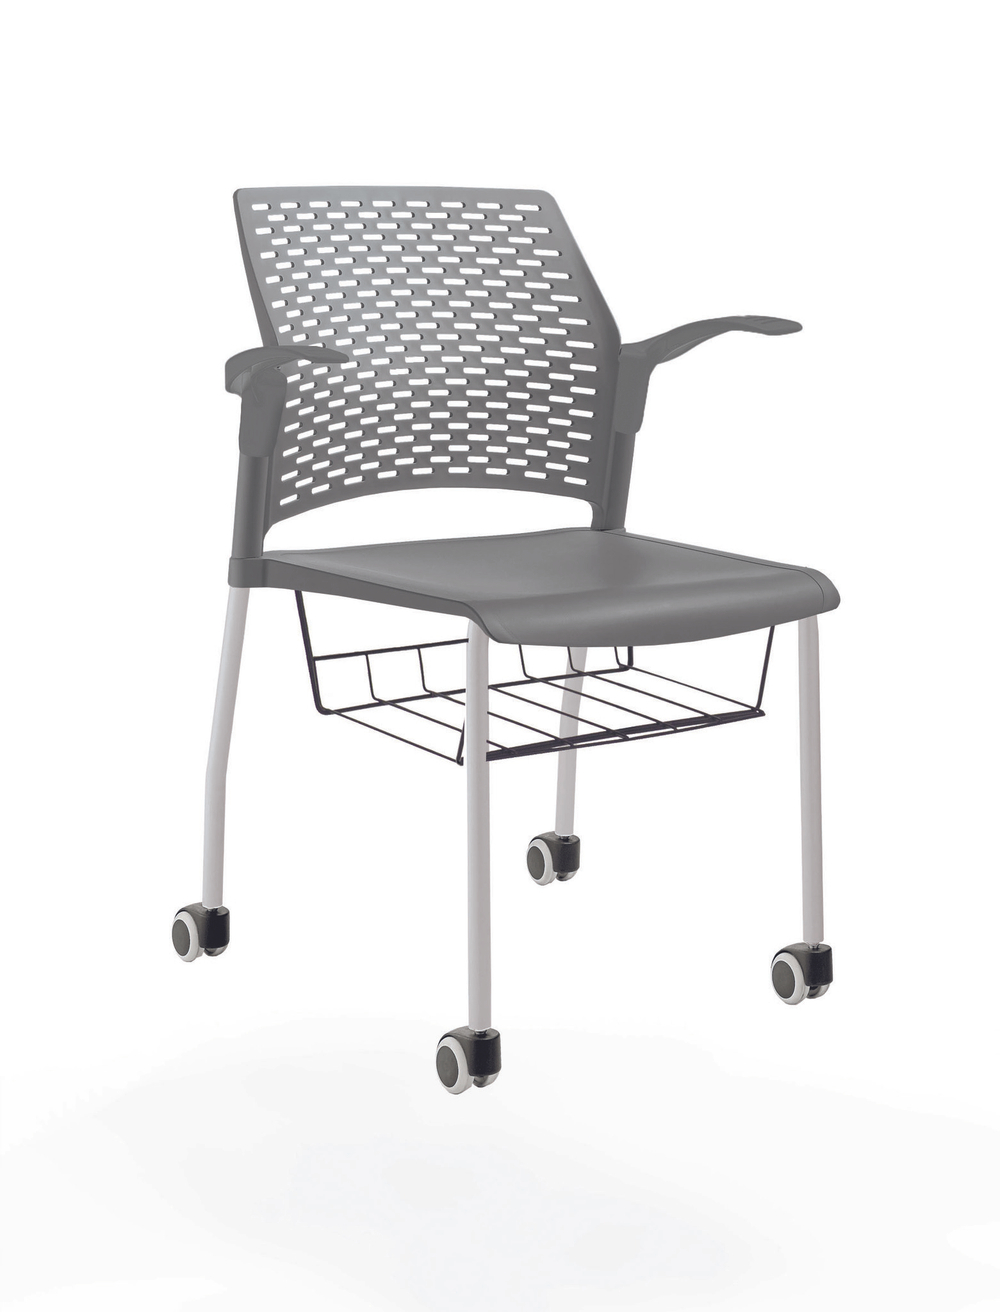 стул Rewind на 4 ногах и колесах, каркас серый, пластик серый, с открытыми подлокотниками, с подседельной корзиной, сиденье и спинка без обивки